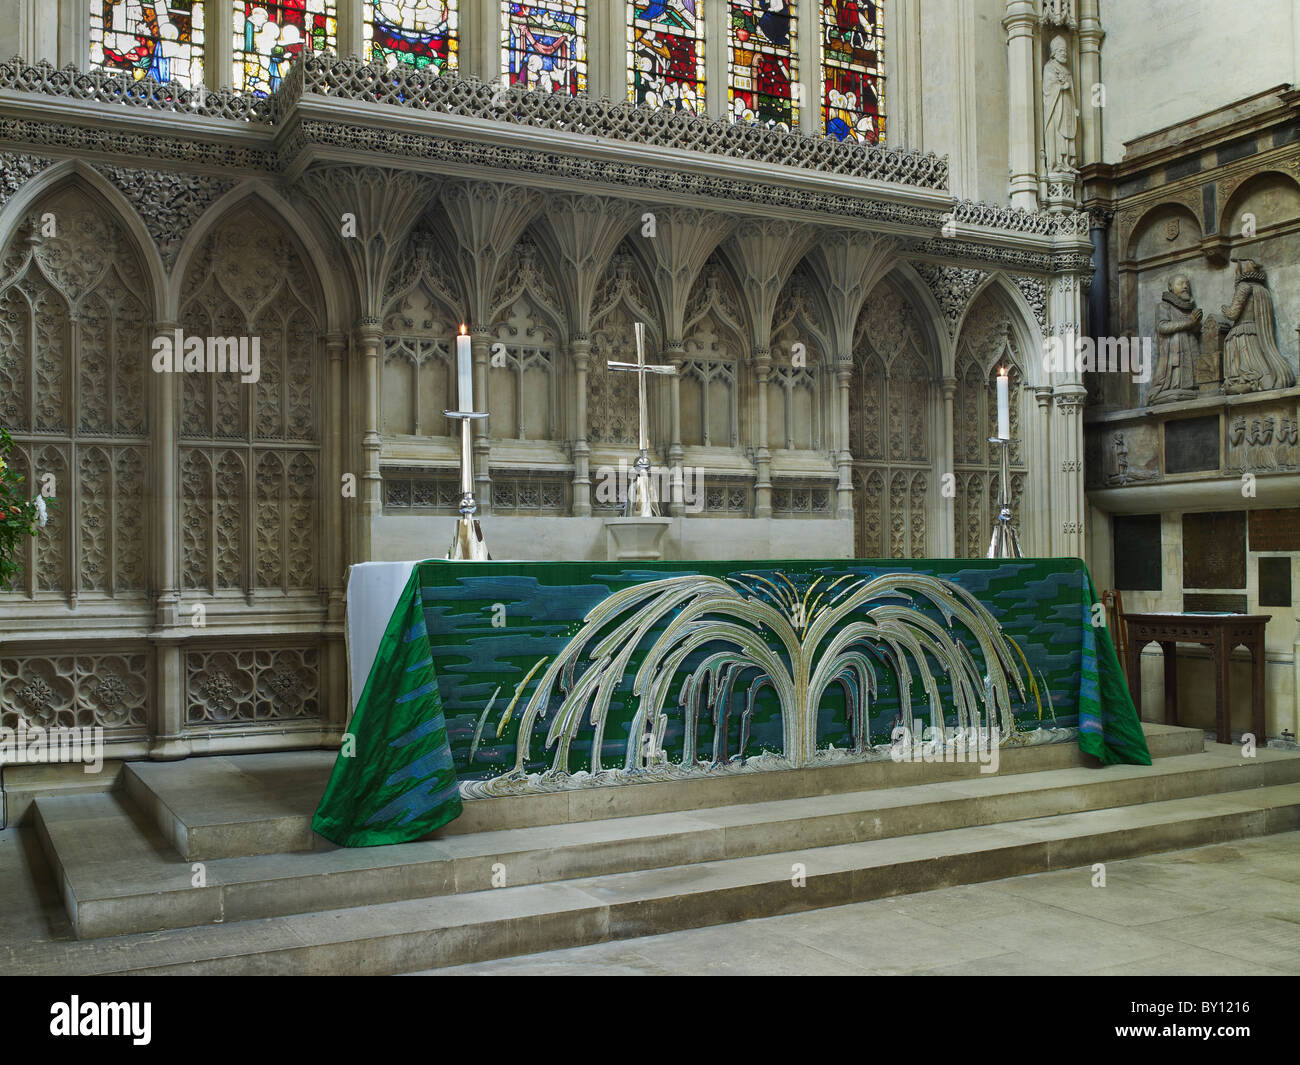 La Abadía de Bath, altar con frontal mostrando una fuente Foto de stock